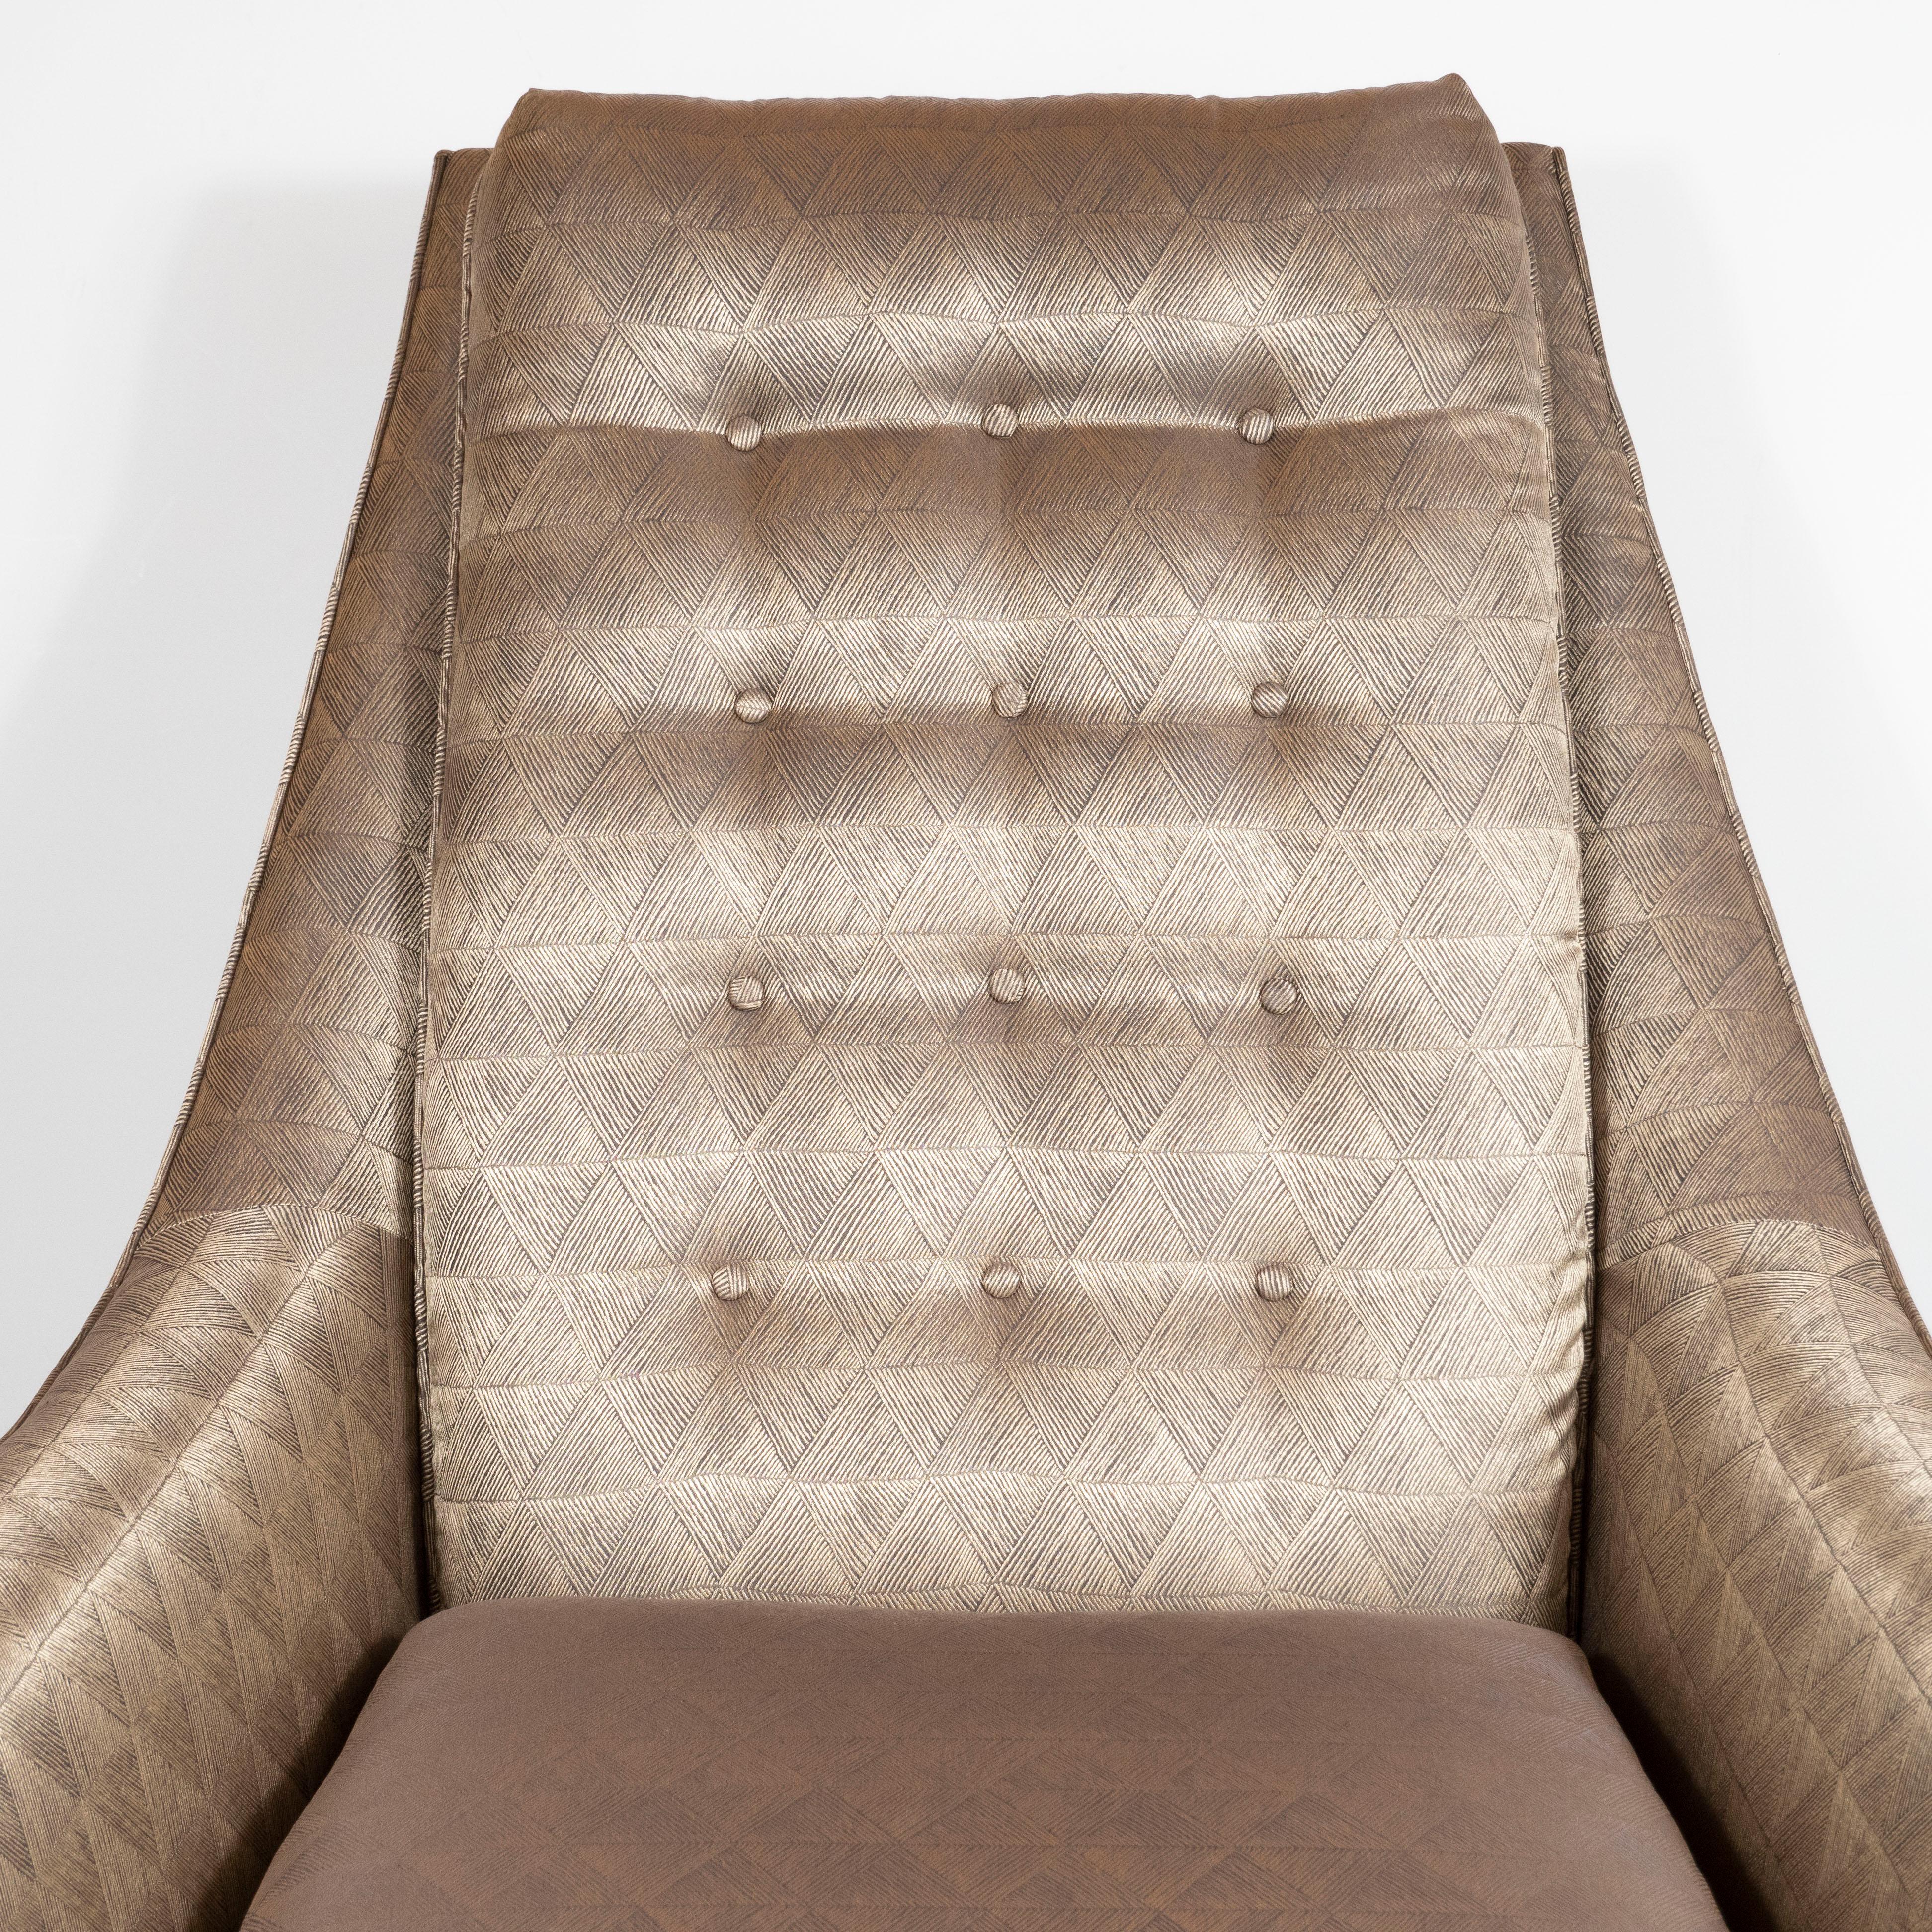 Ebonized Mid-Century Modern High Back Chair by Adrian Pearsall in Geometric Dedar Fabric